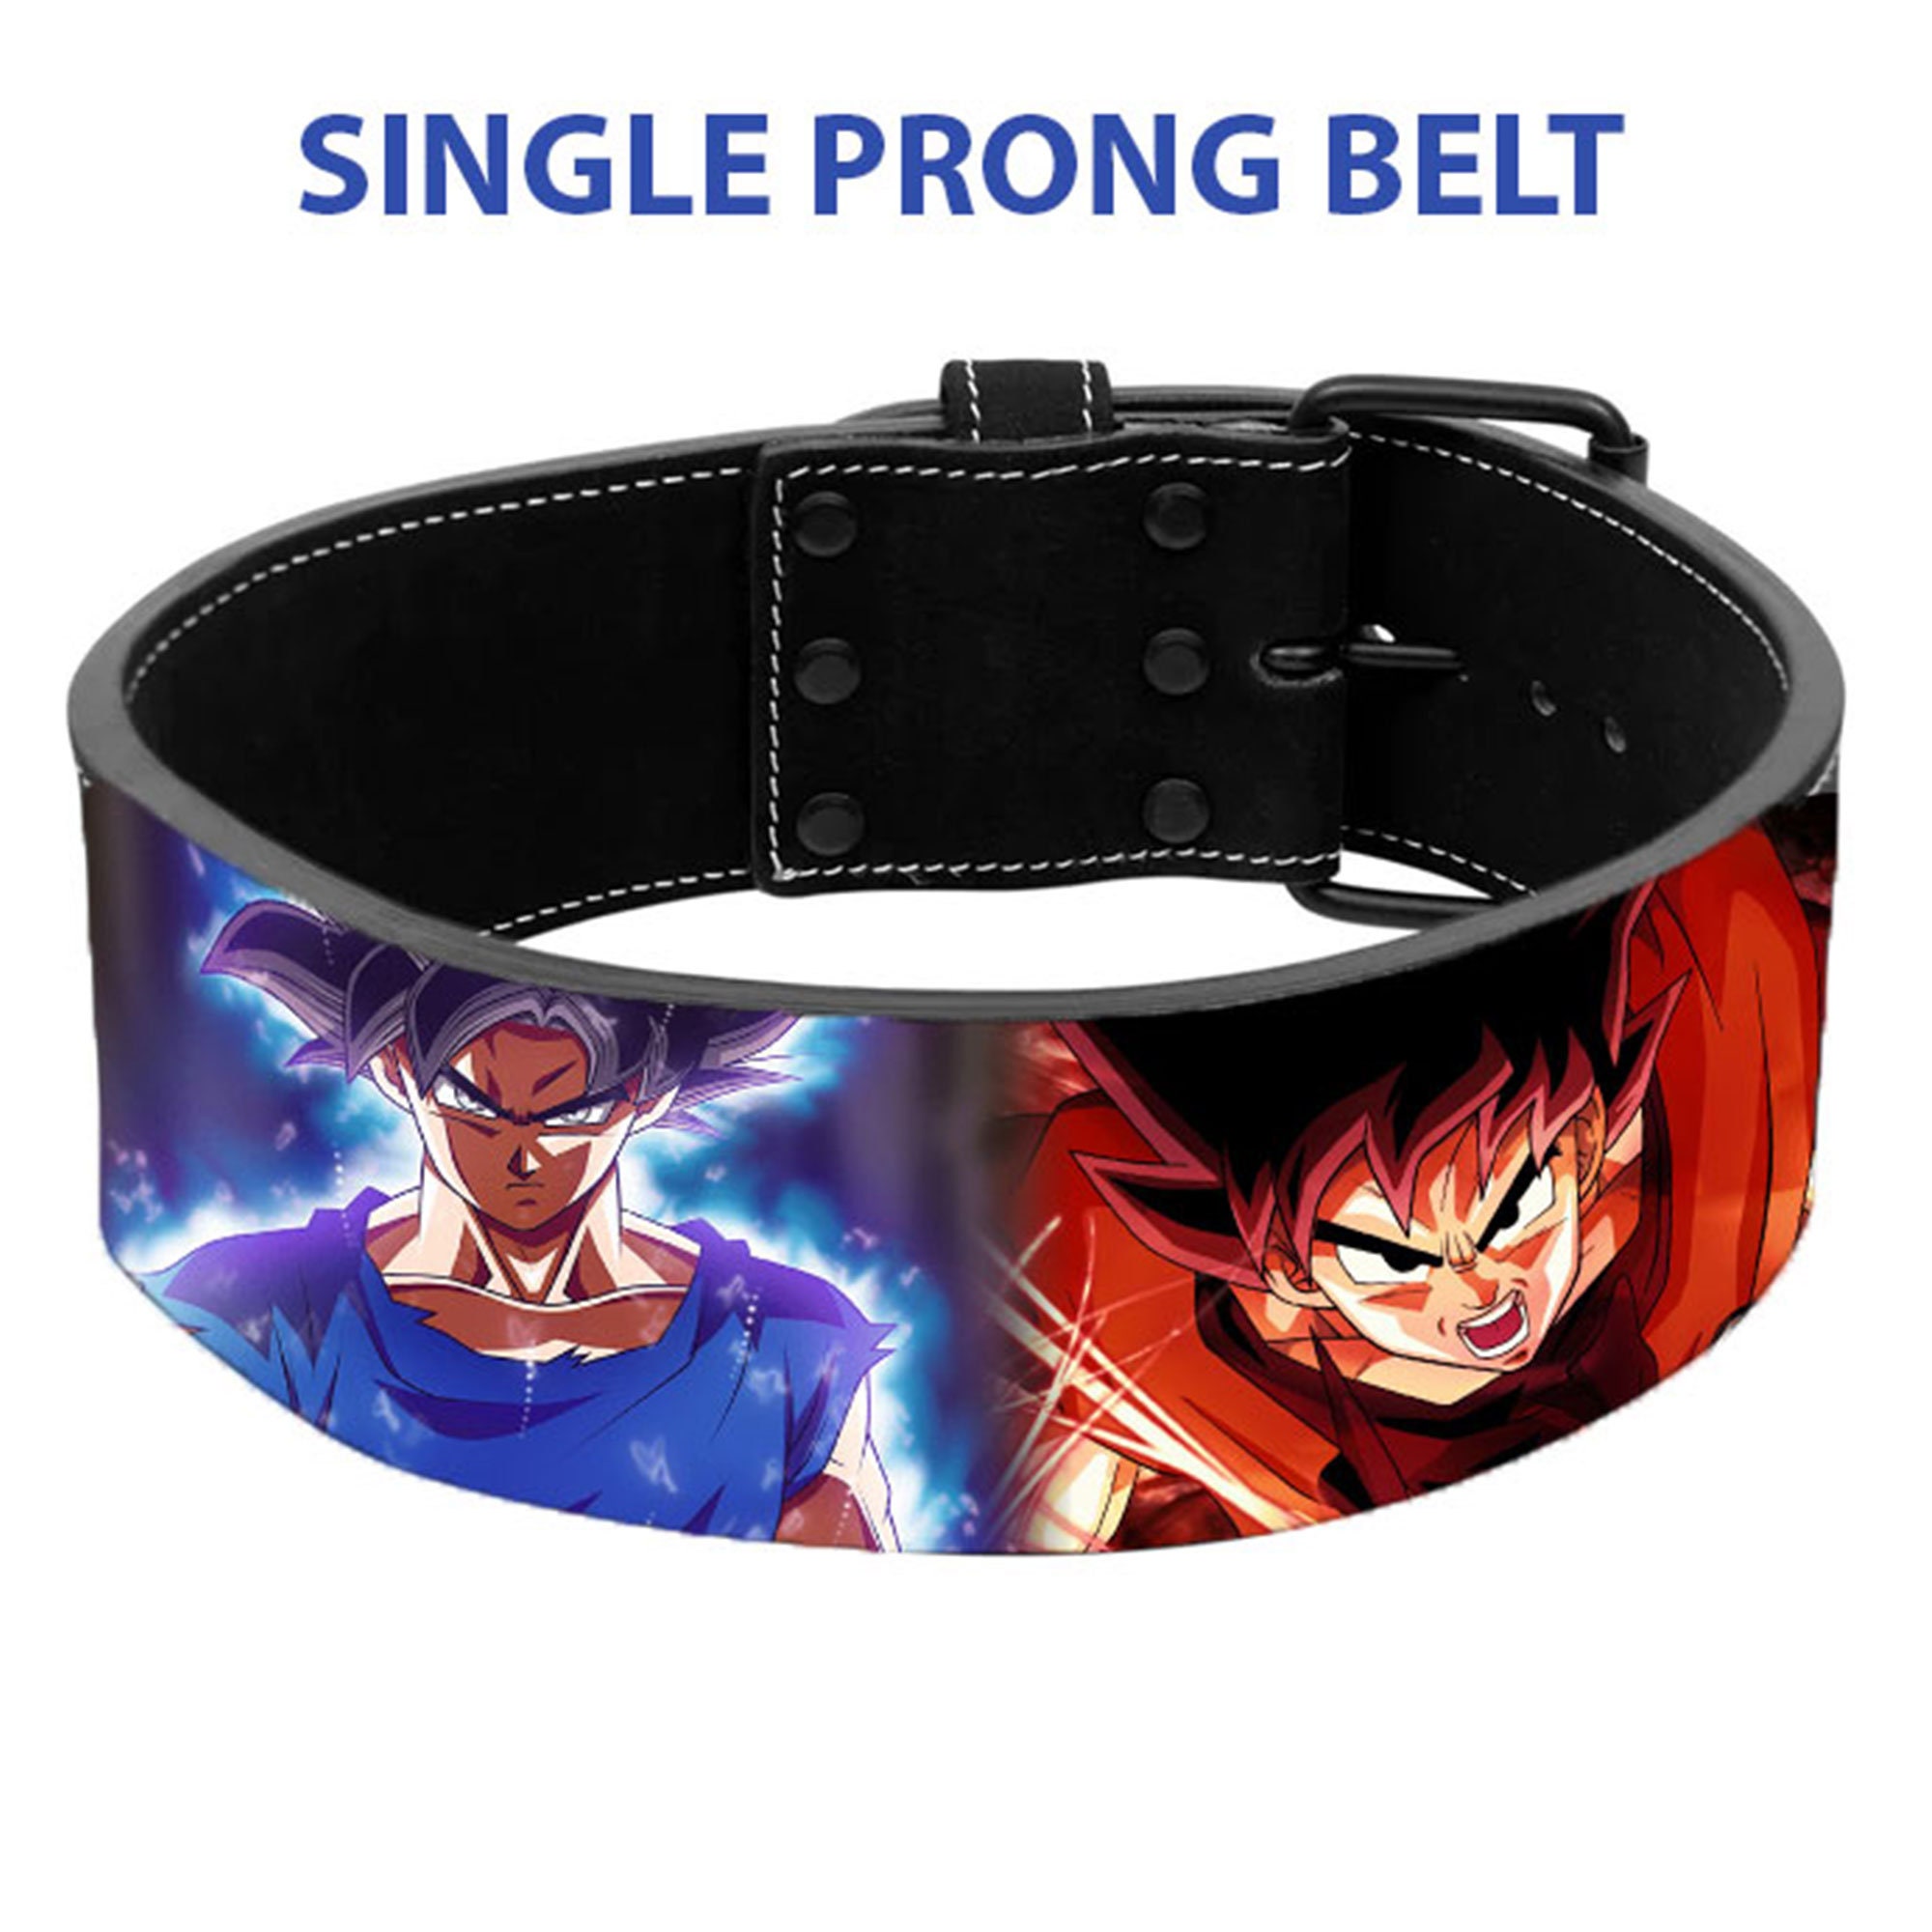 Amazoncom Anime Lifting Belt